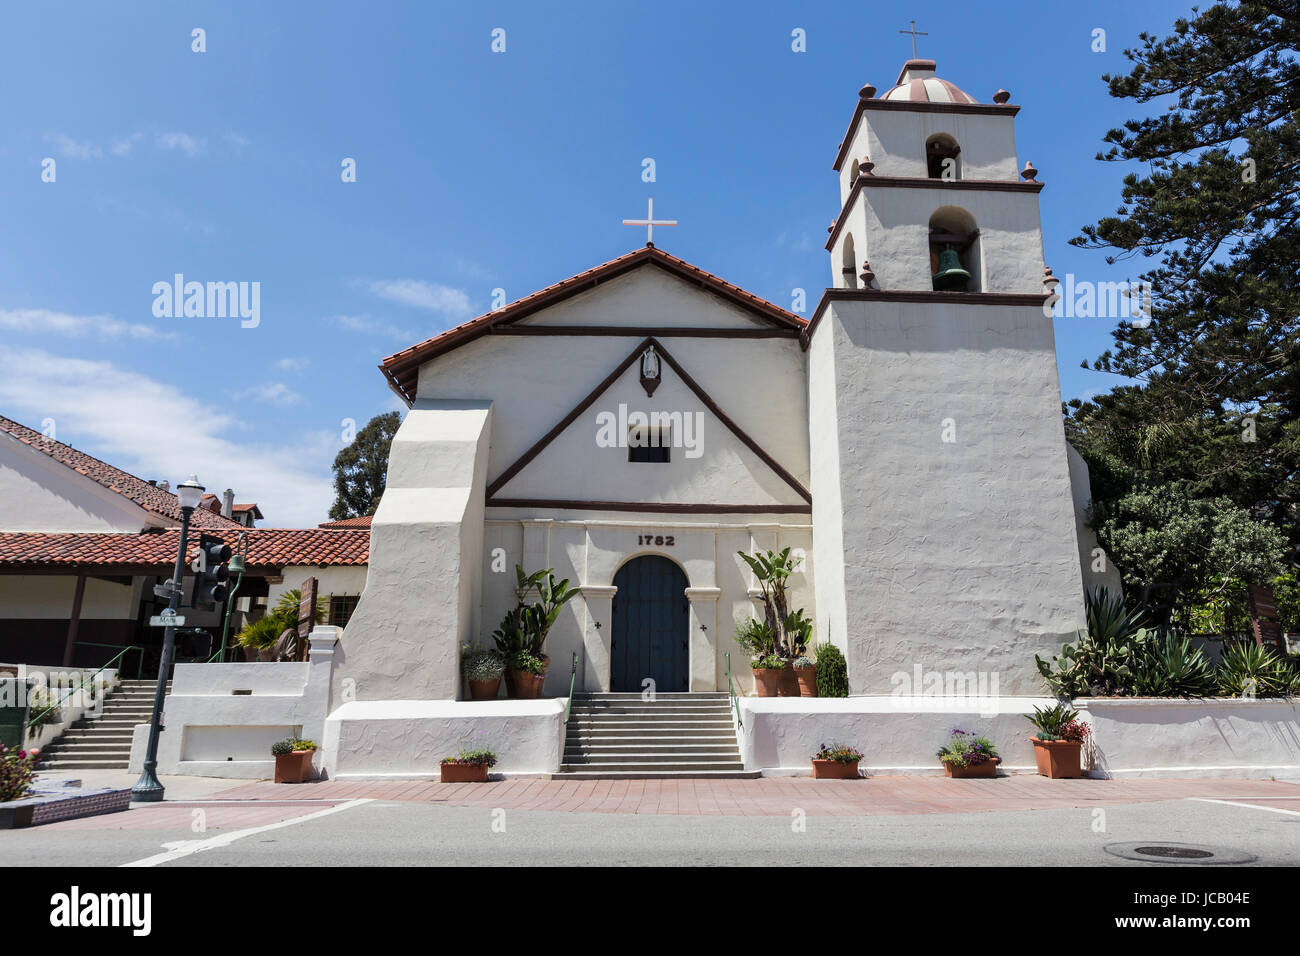 Ventura, Kalifornien, USA - 11. Juni 2017: Front Eingang zur historischen Ventura Mission Gebäude in Südkalifornien. Stockfoto